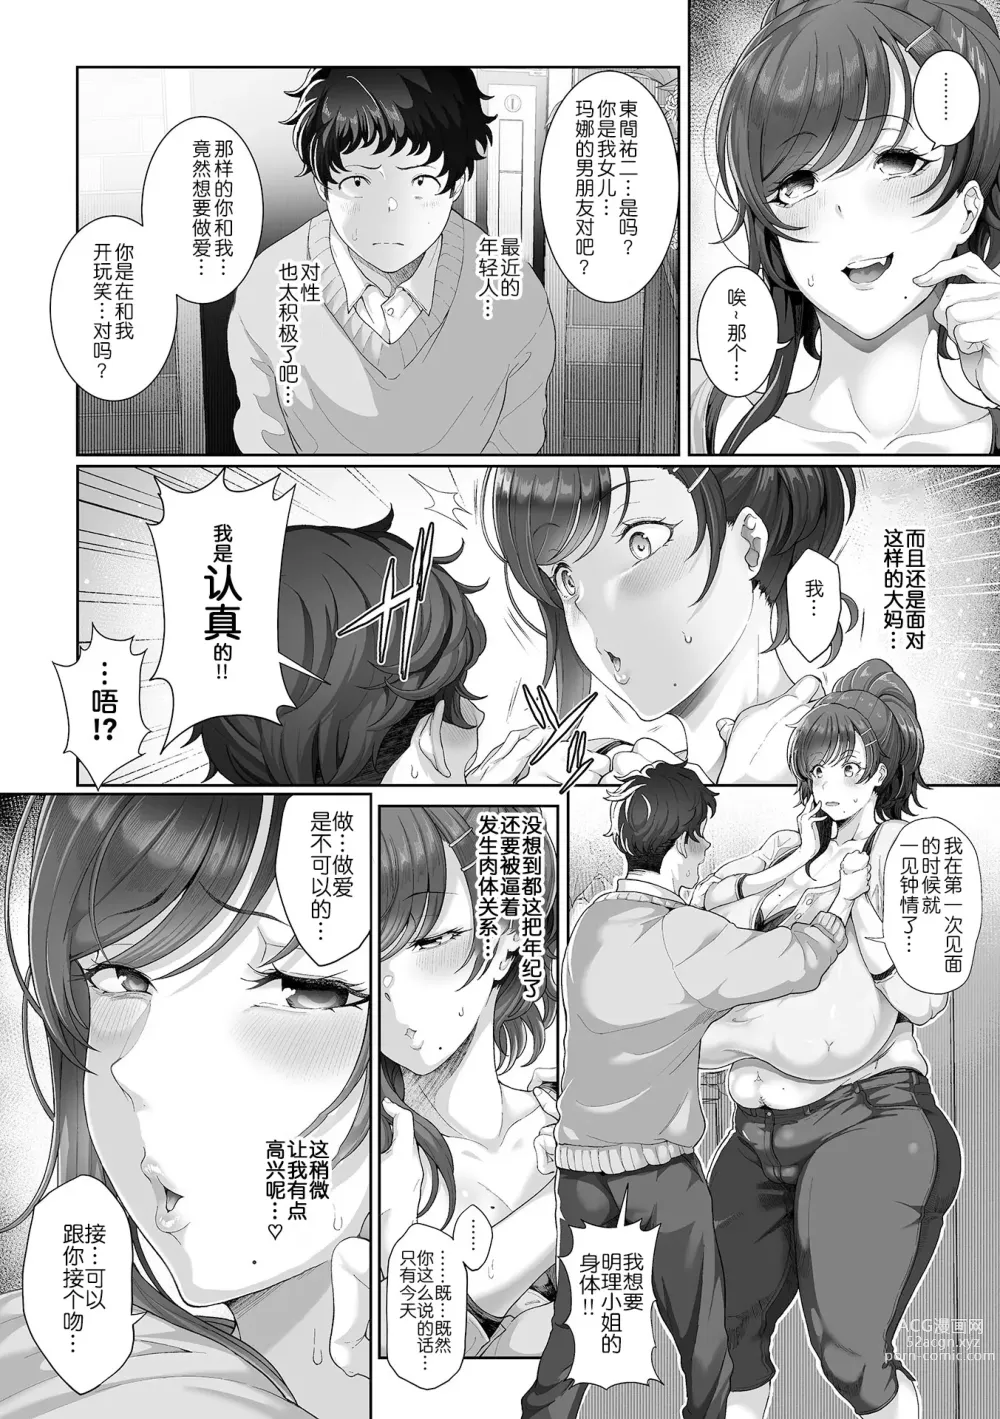 Page 3 of manga Musume no Kareshi to Shicha imashita.